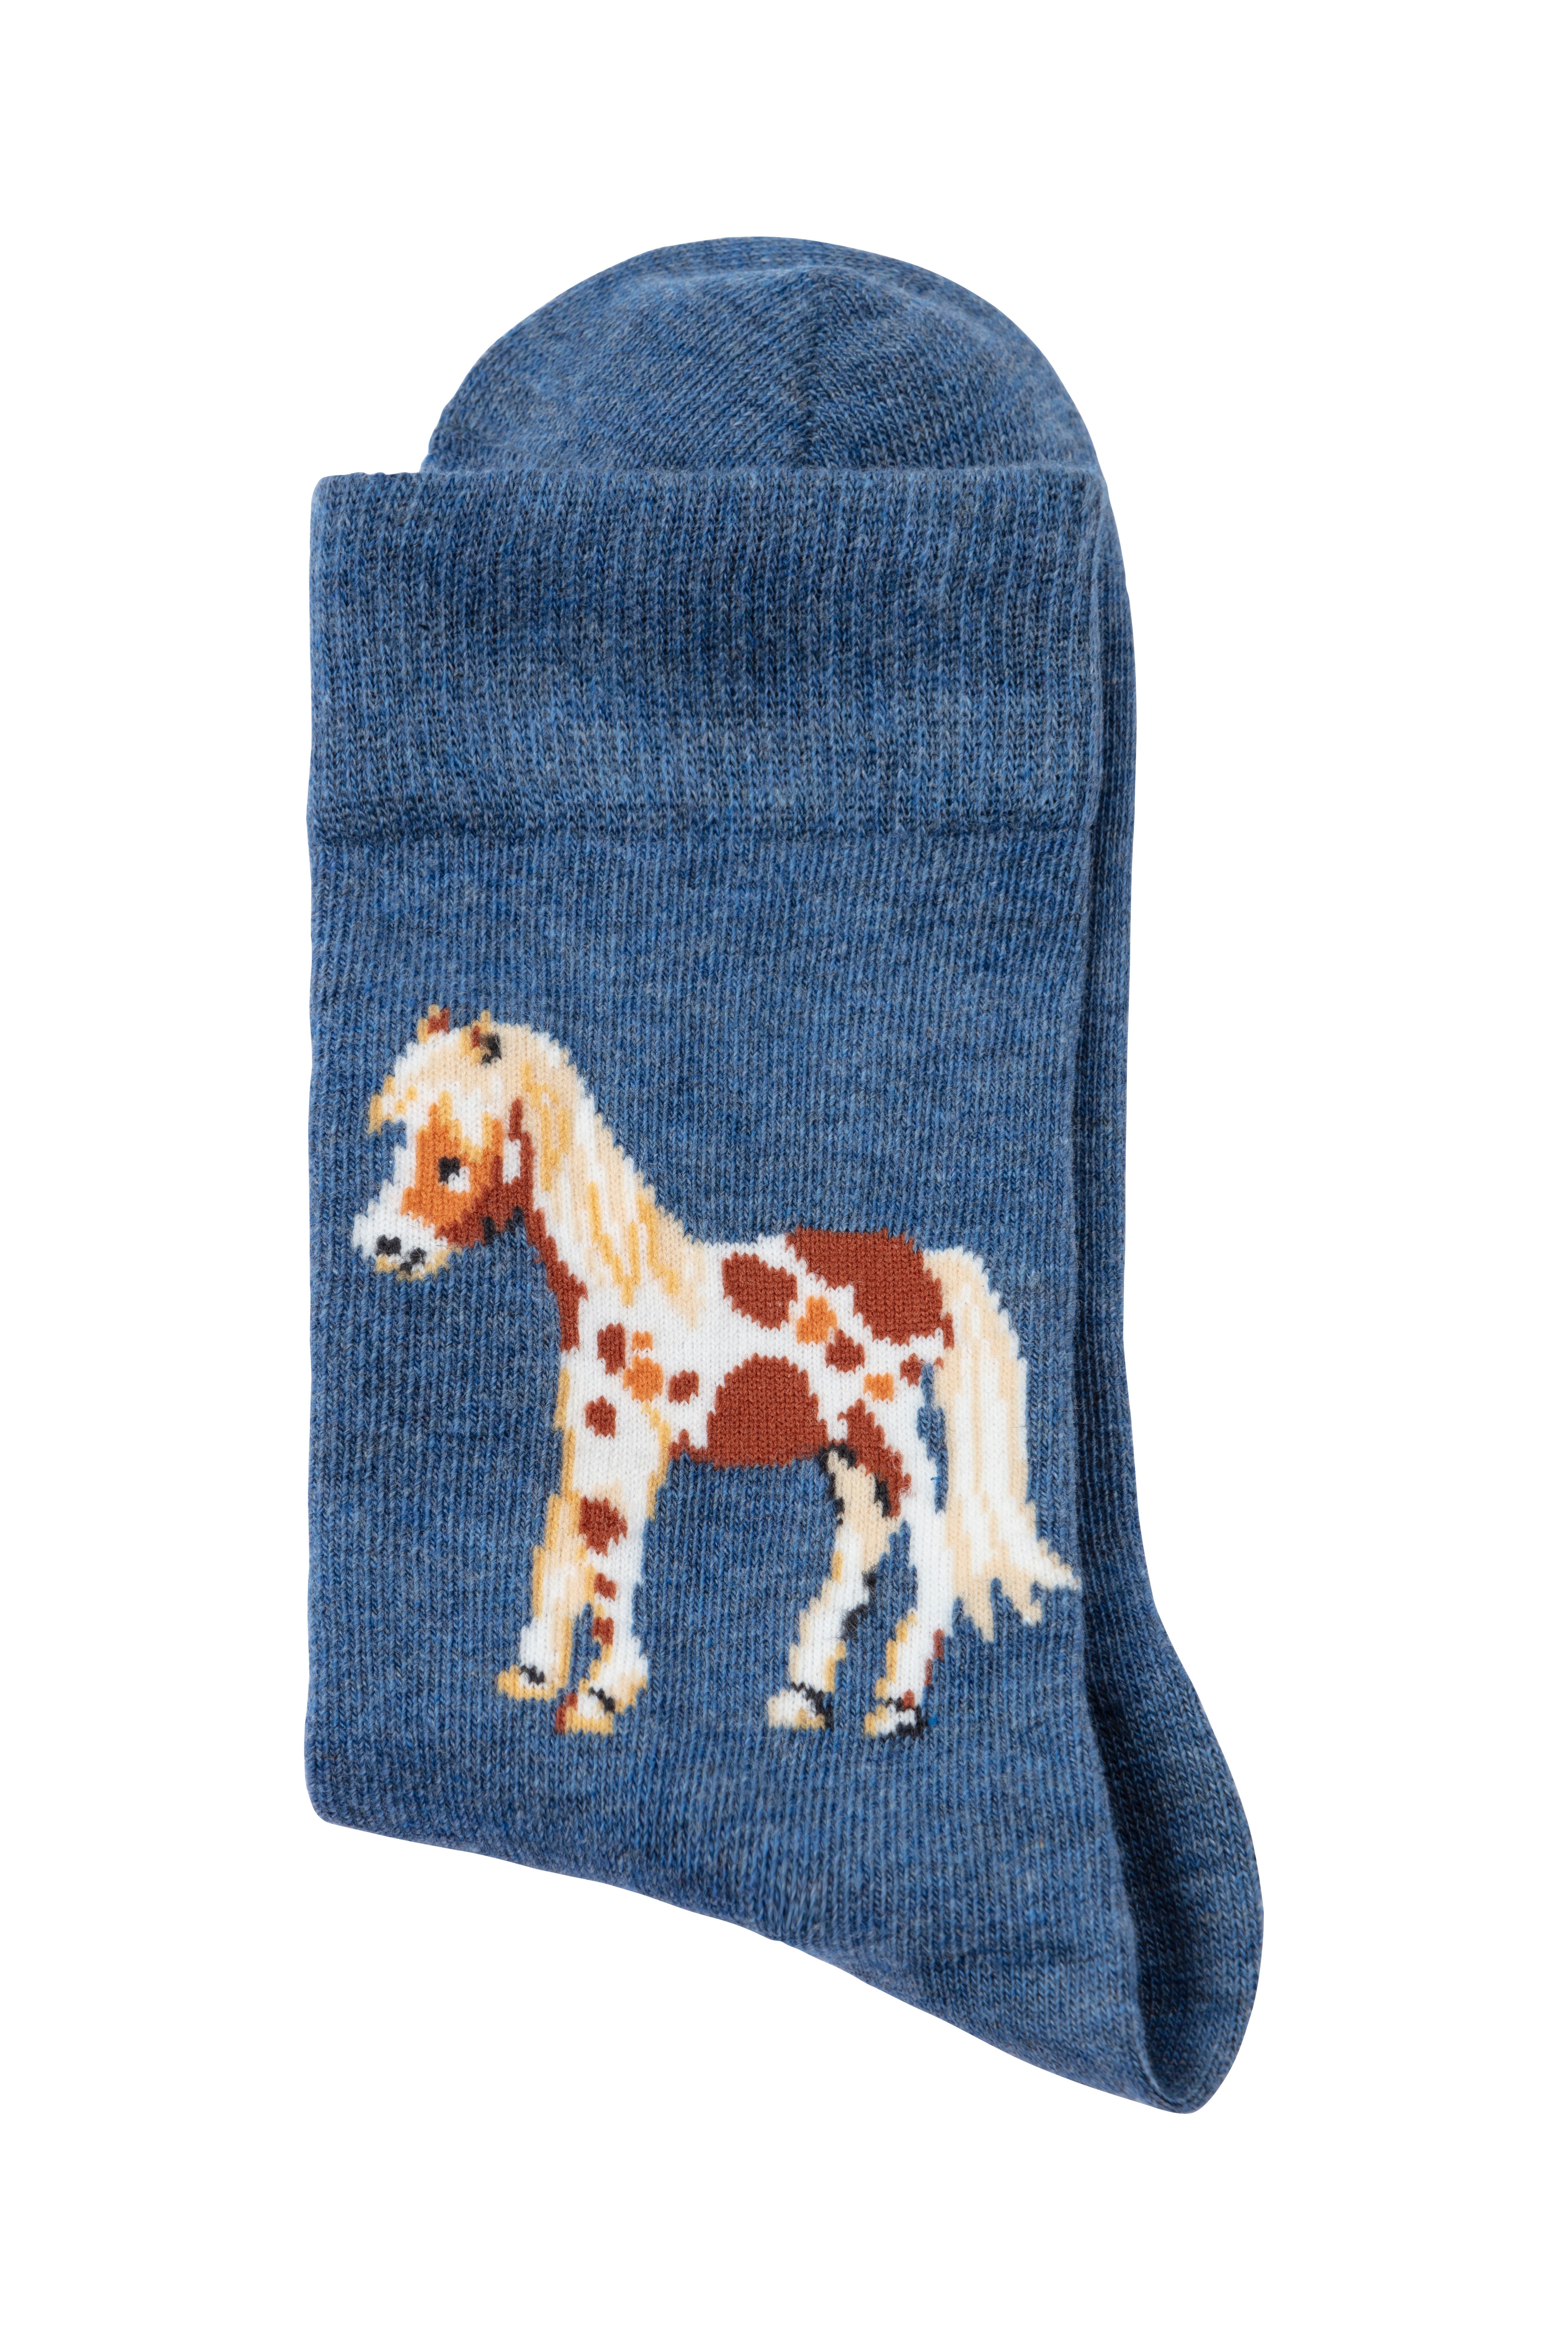 Mit Pferdemotiven unterschiedlichen H.I.S Socken (5-Paar)